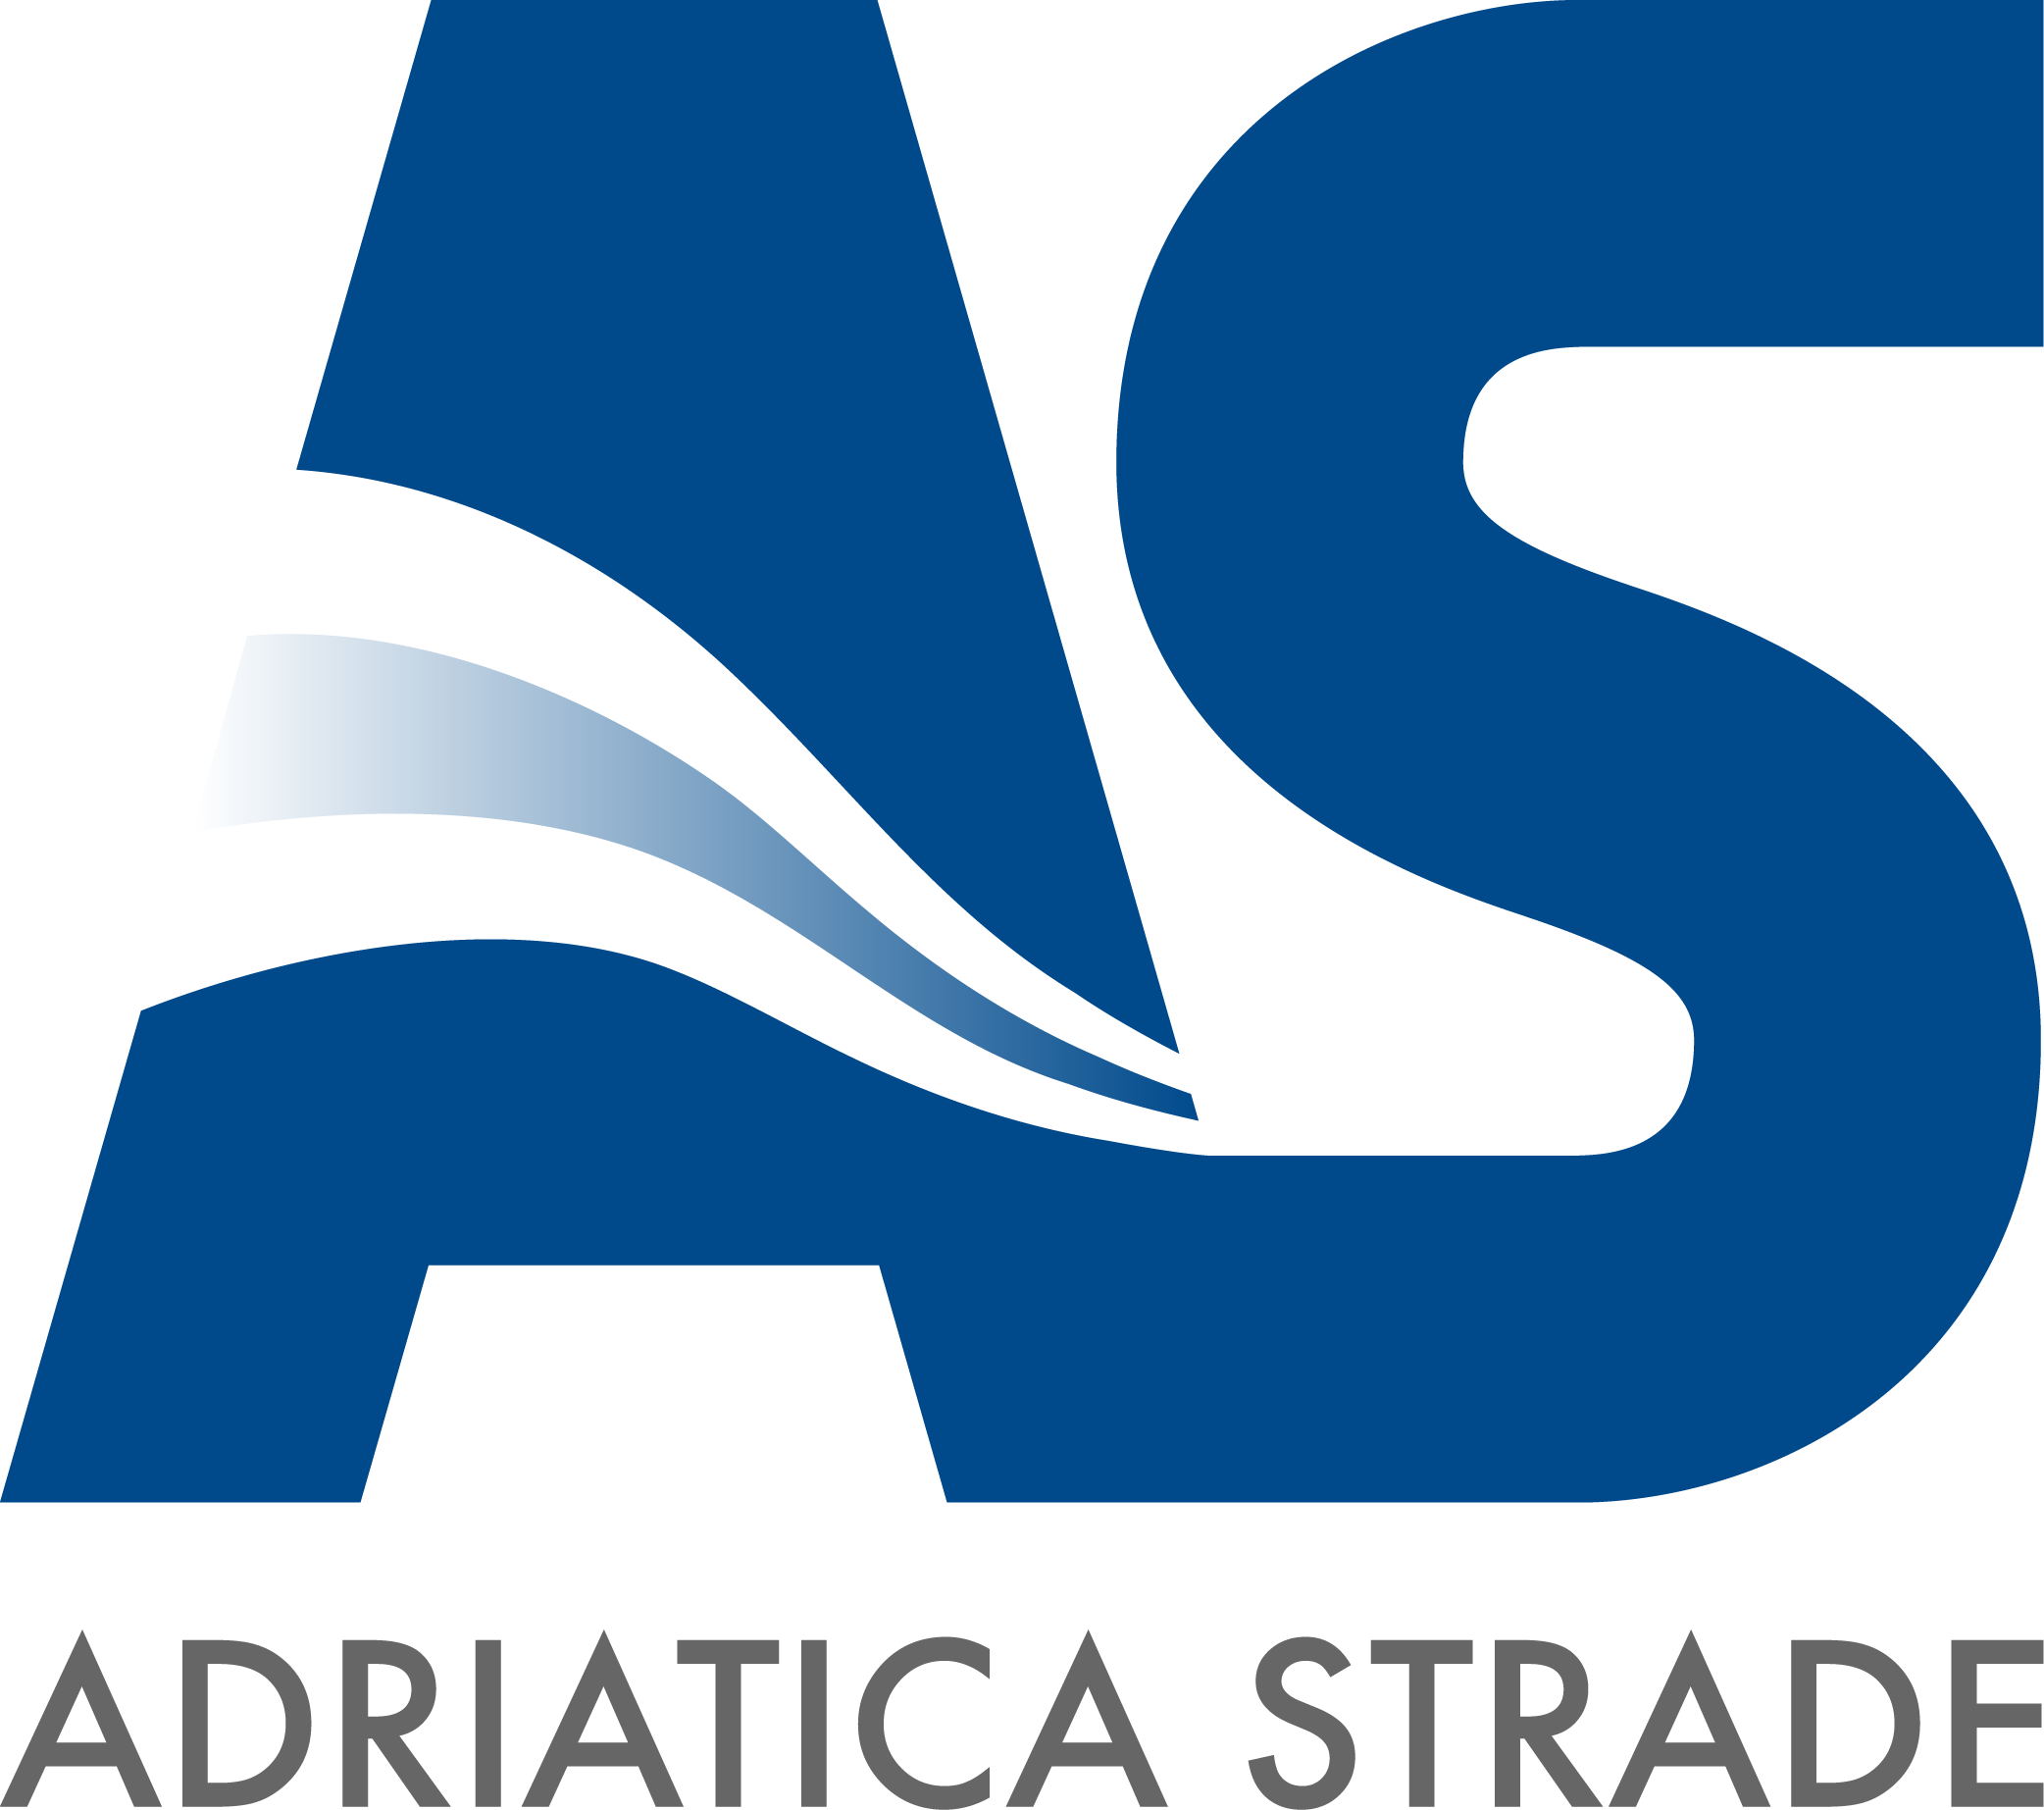 Adriaticastrade s.r.l. Logo